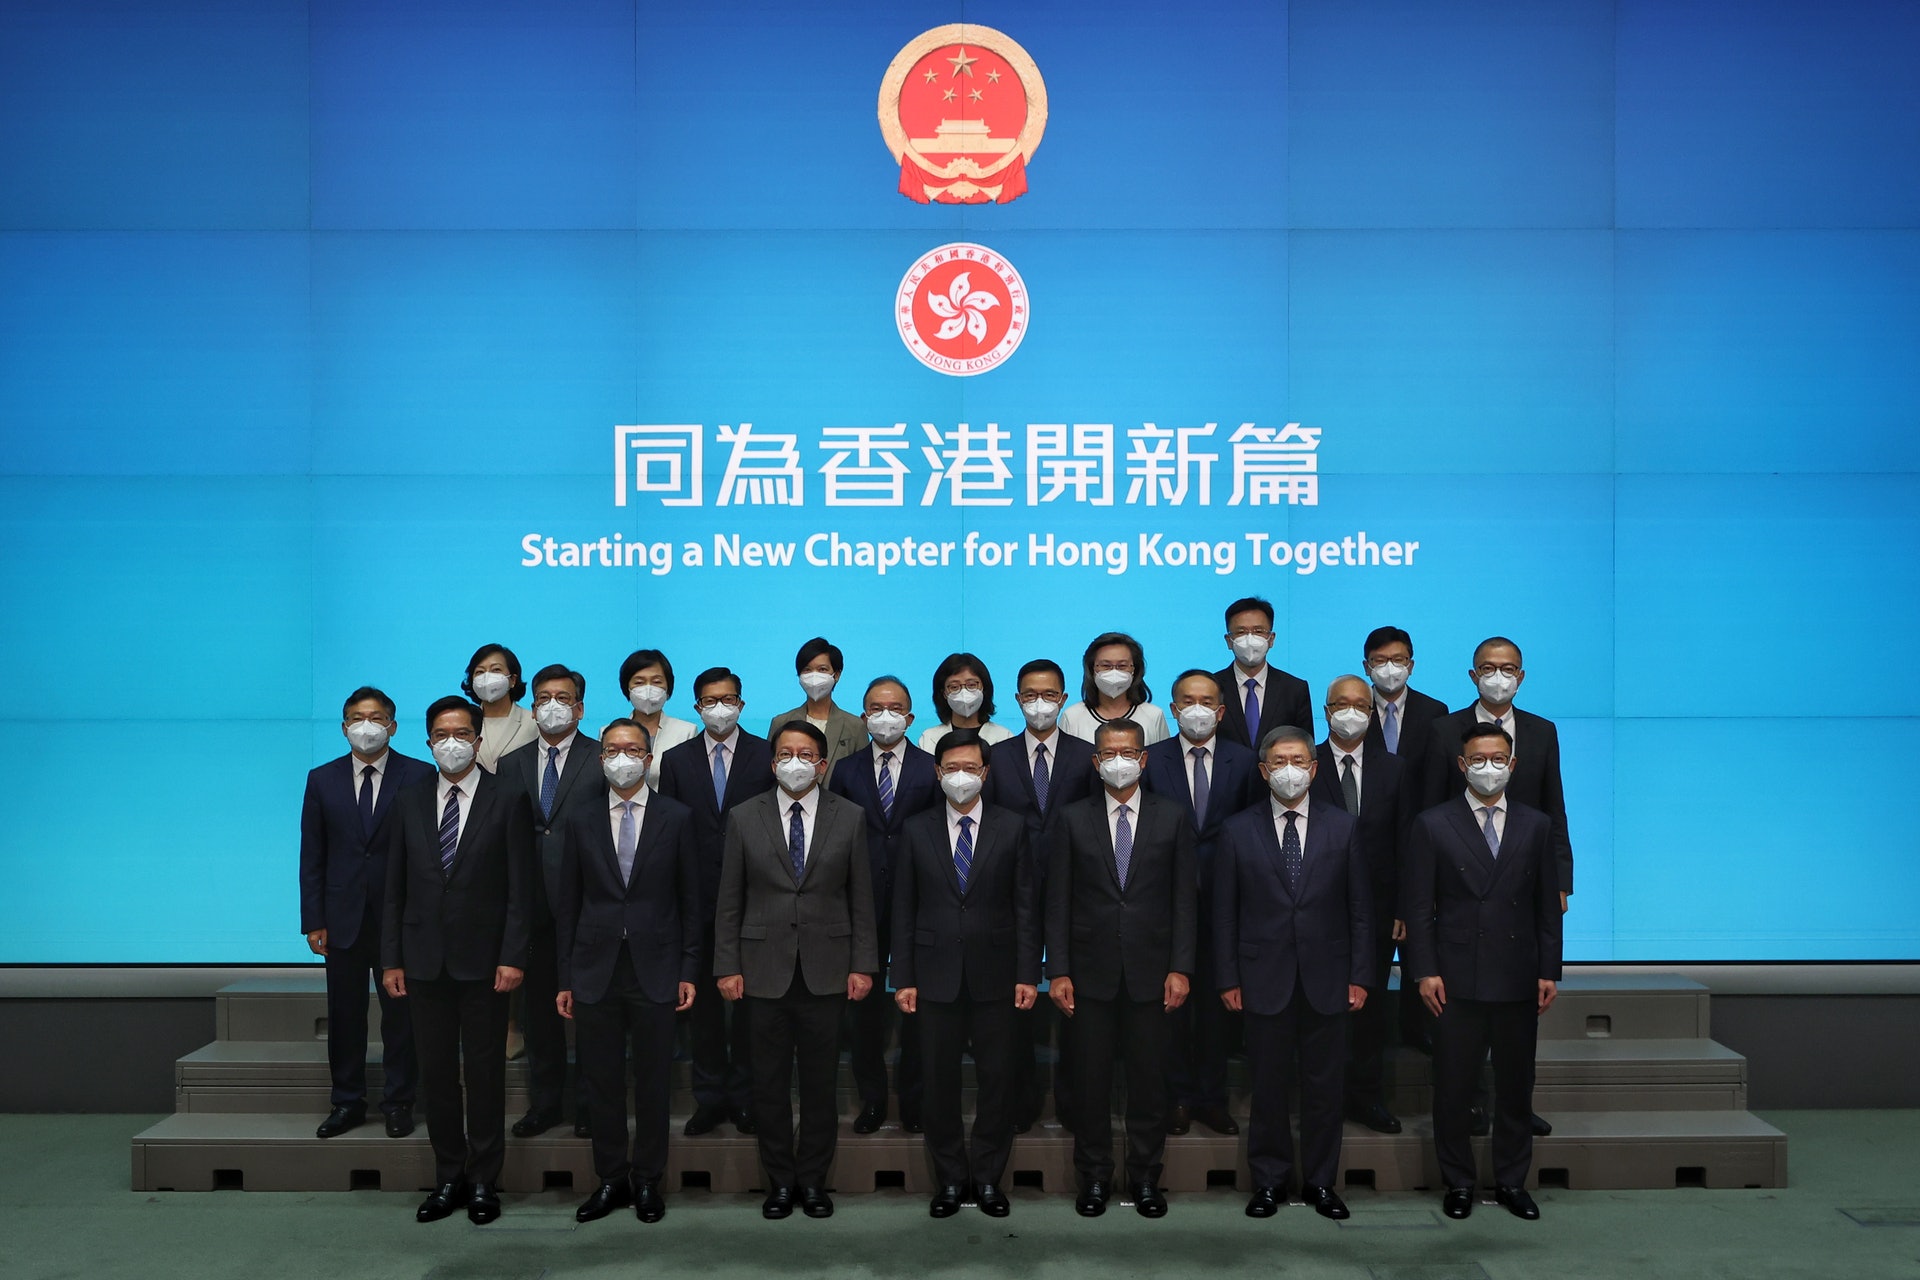 2022年6月19日，李家超帶領一眾候任主要官員見記者，陳國基站在李家超右邊，而曾國衞則站在李家超右後方。（張浩維攝）